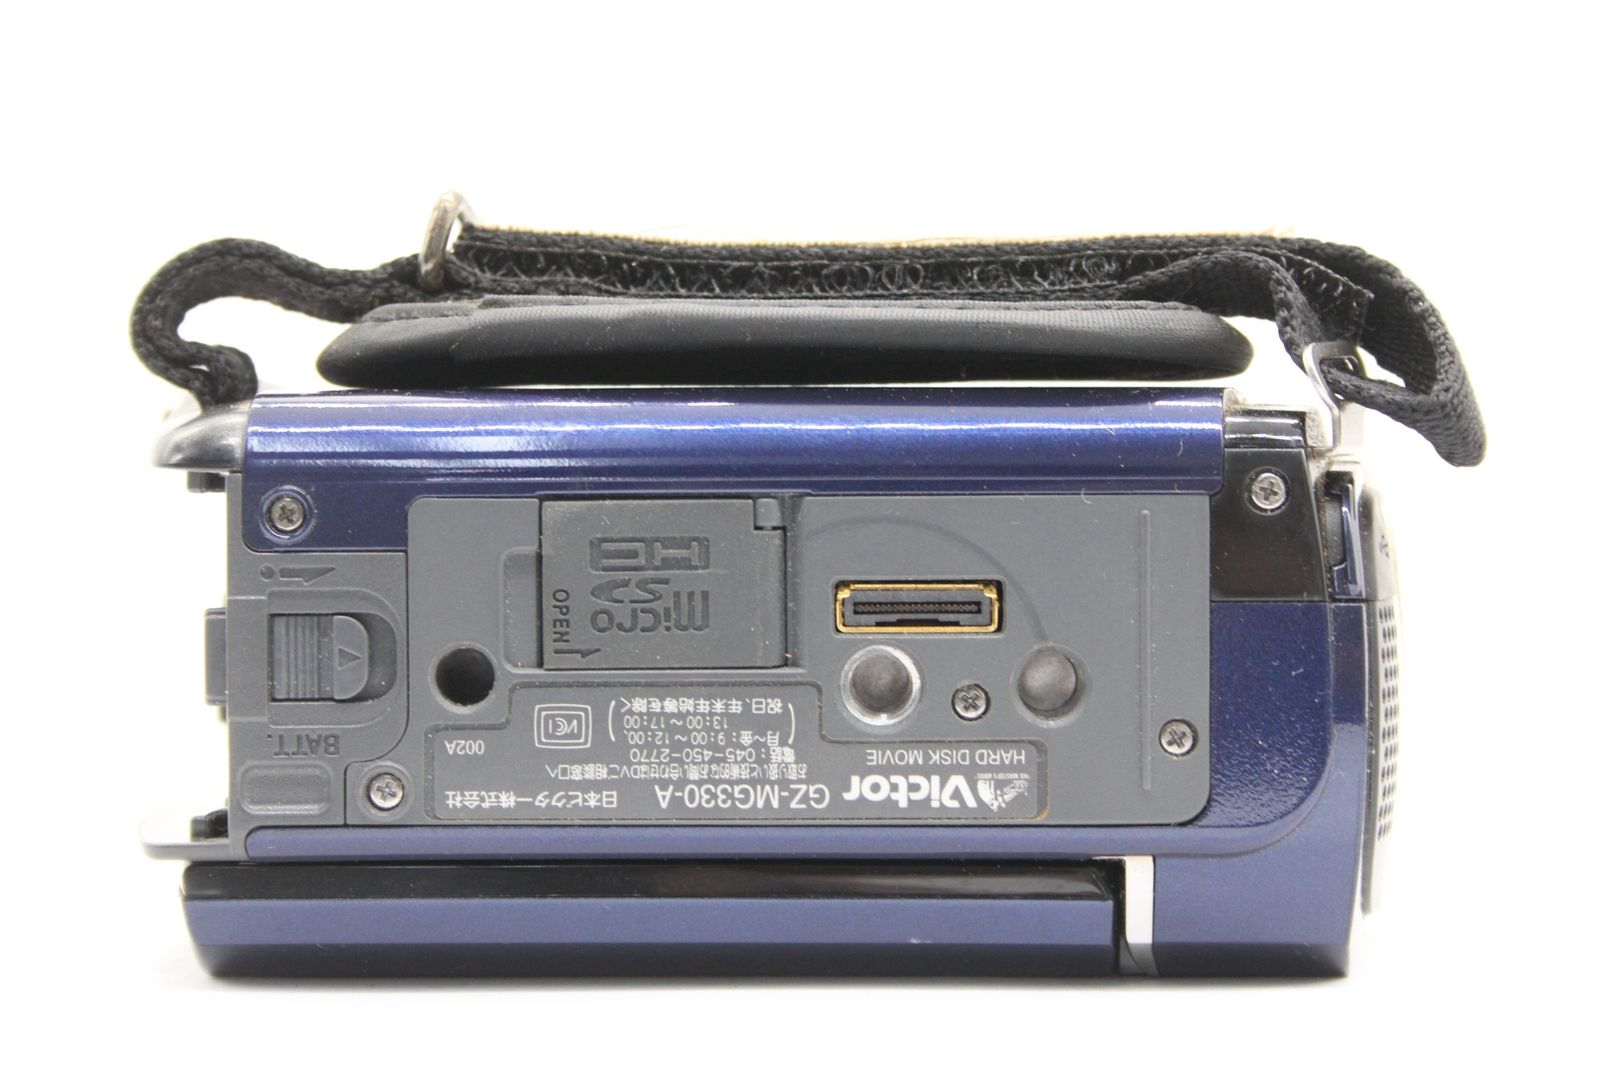 【返品保証】 【録画再生確認済み】ビクター Victor Everio GZ-MG330-A ブルー 32x バッテリー 元箱付き ビデオカメラ  v1234